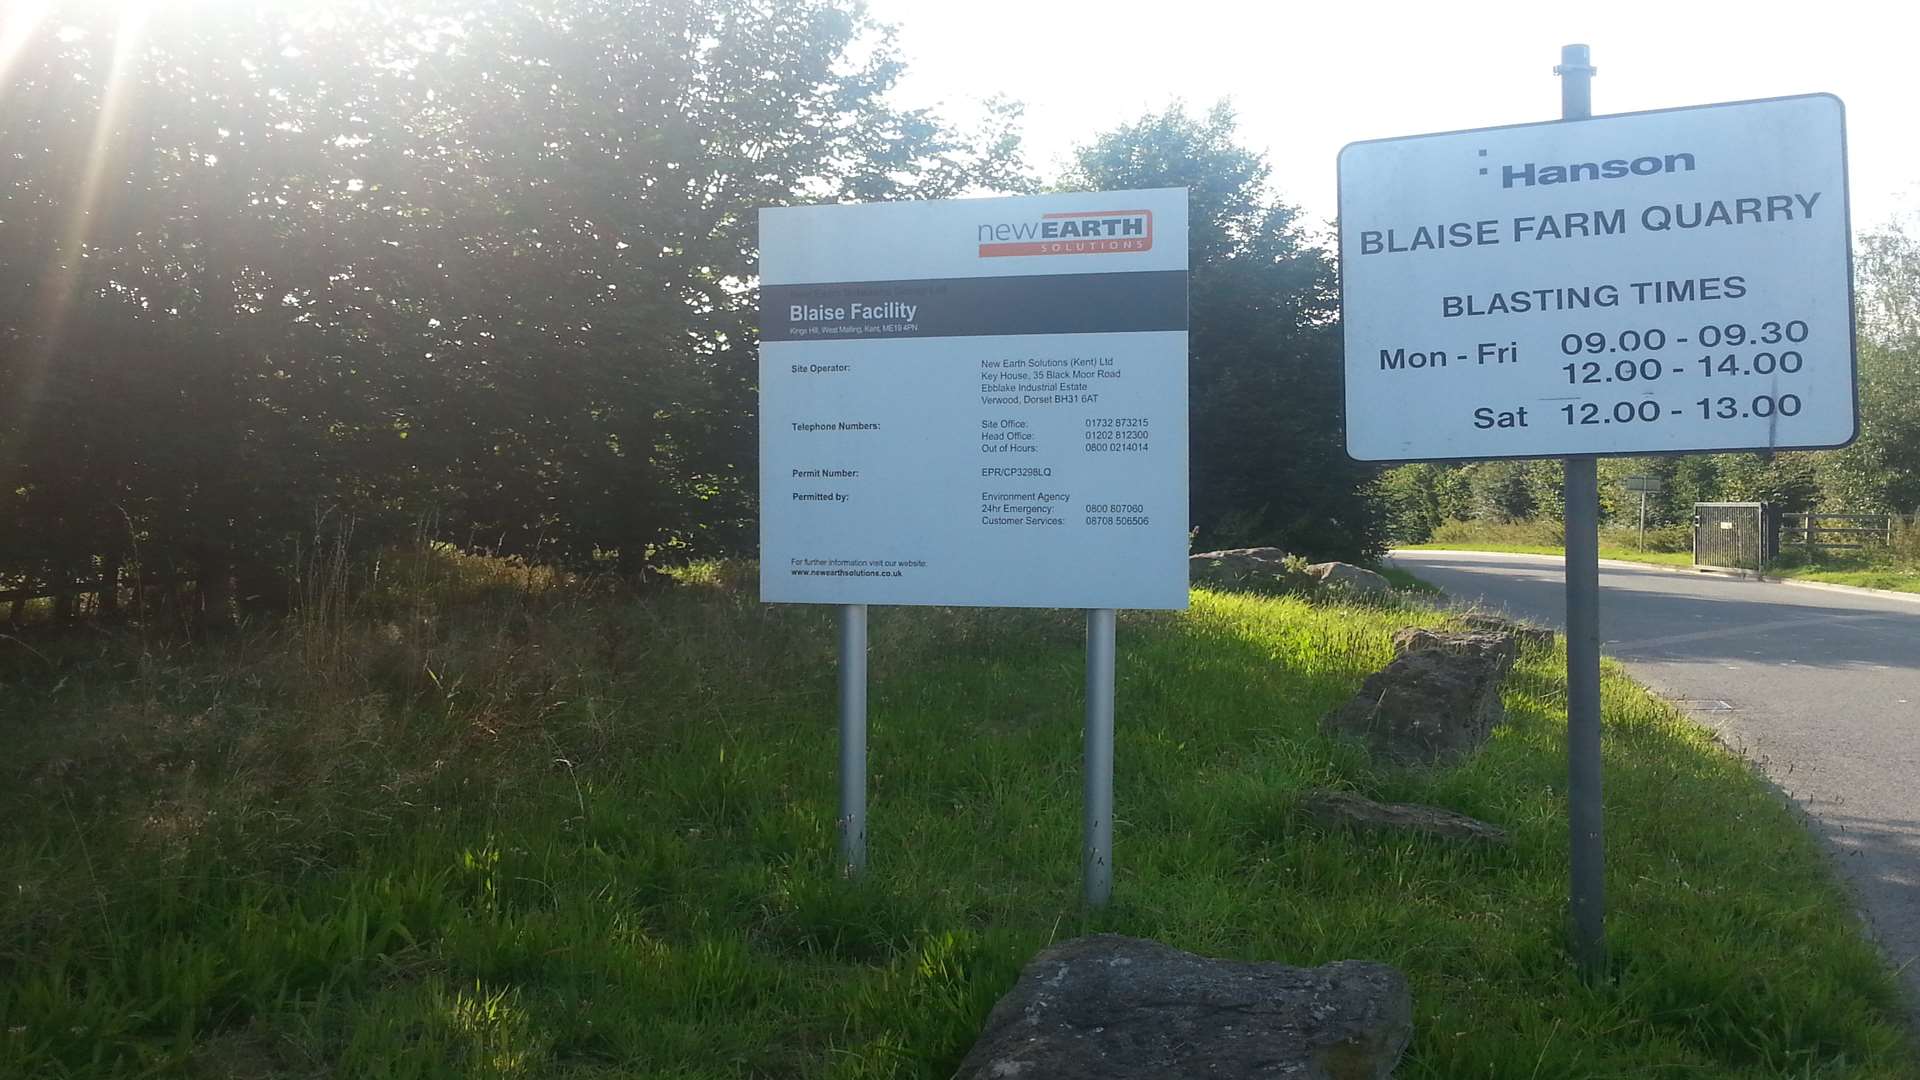 Blaise Farm Quarry in Kings Hill